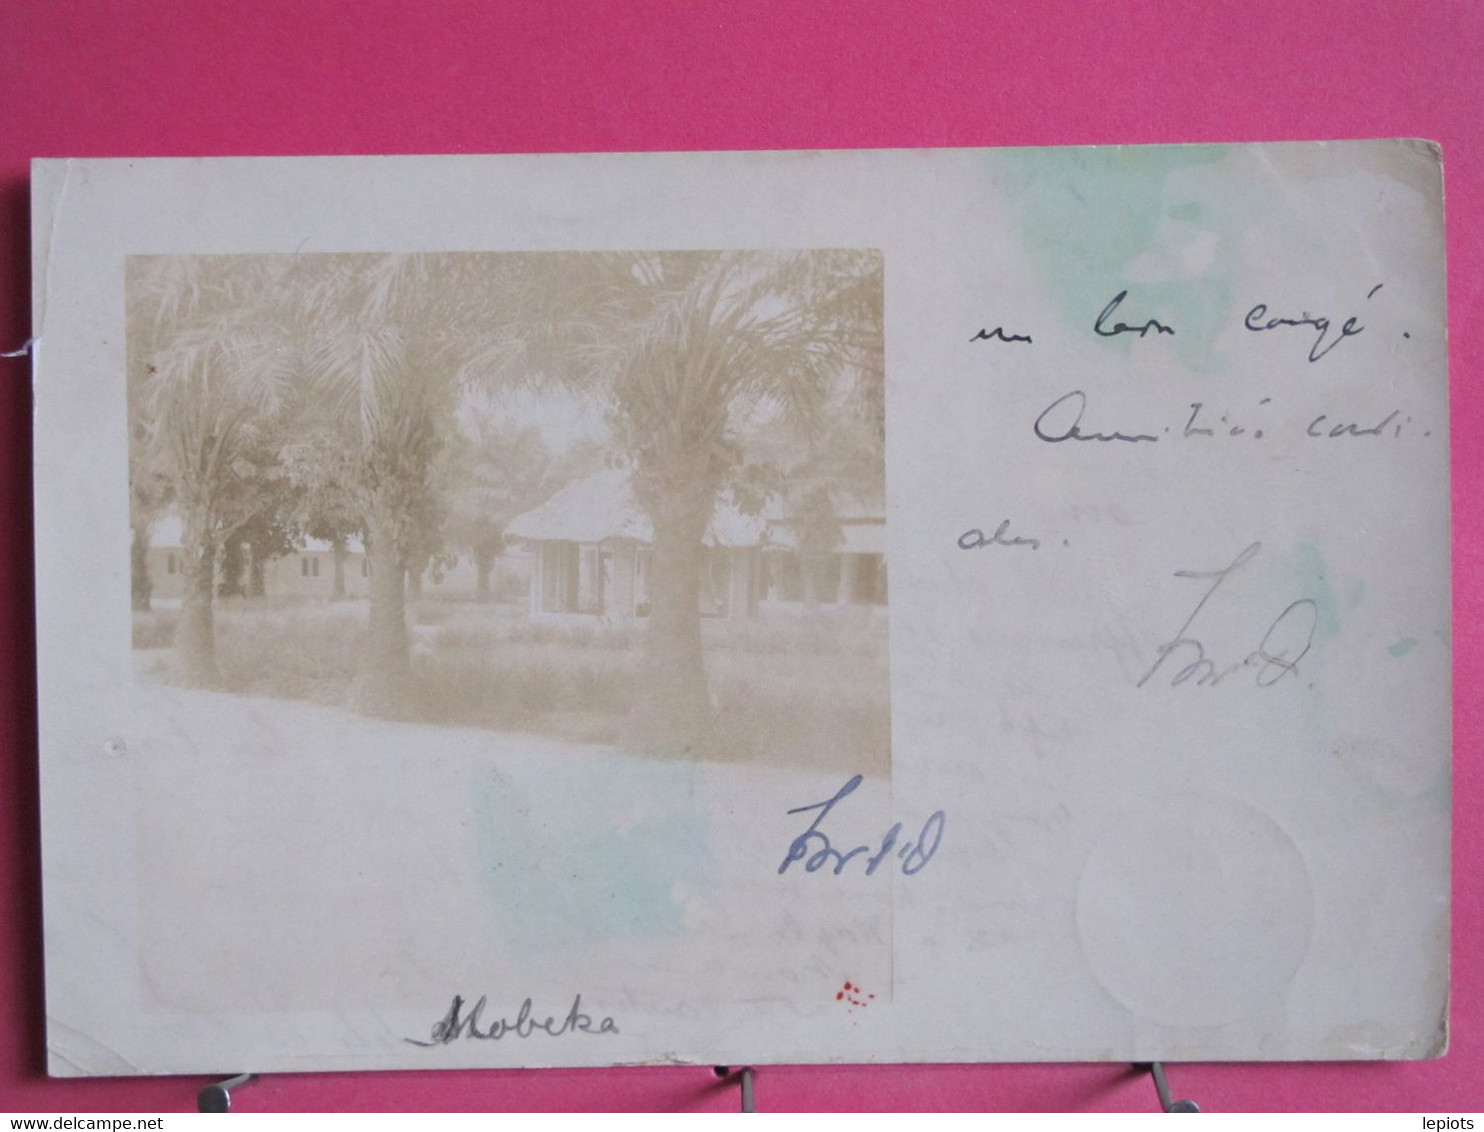 Visuel Très Peu Courant - Congo - Mobeka - Carte Photo D'une Maison - Oblitérations Kinshasa & Brazaville Au Verso -1911 - Kinshasa - Leopoldville (Leopoldstadt)